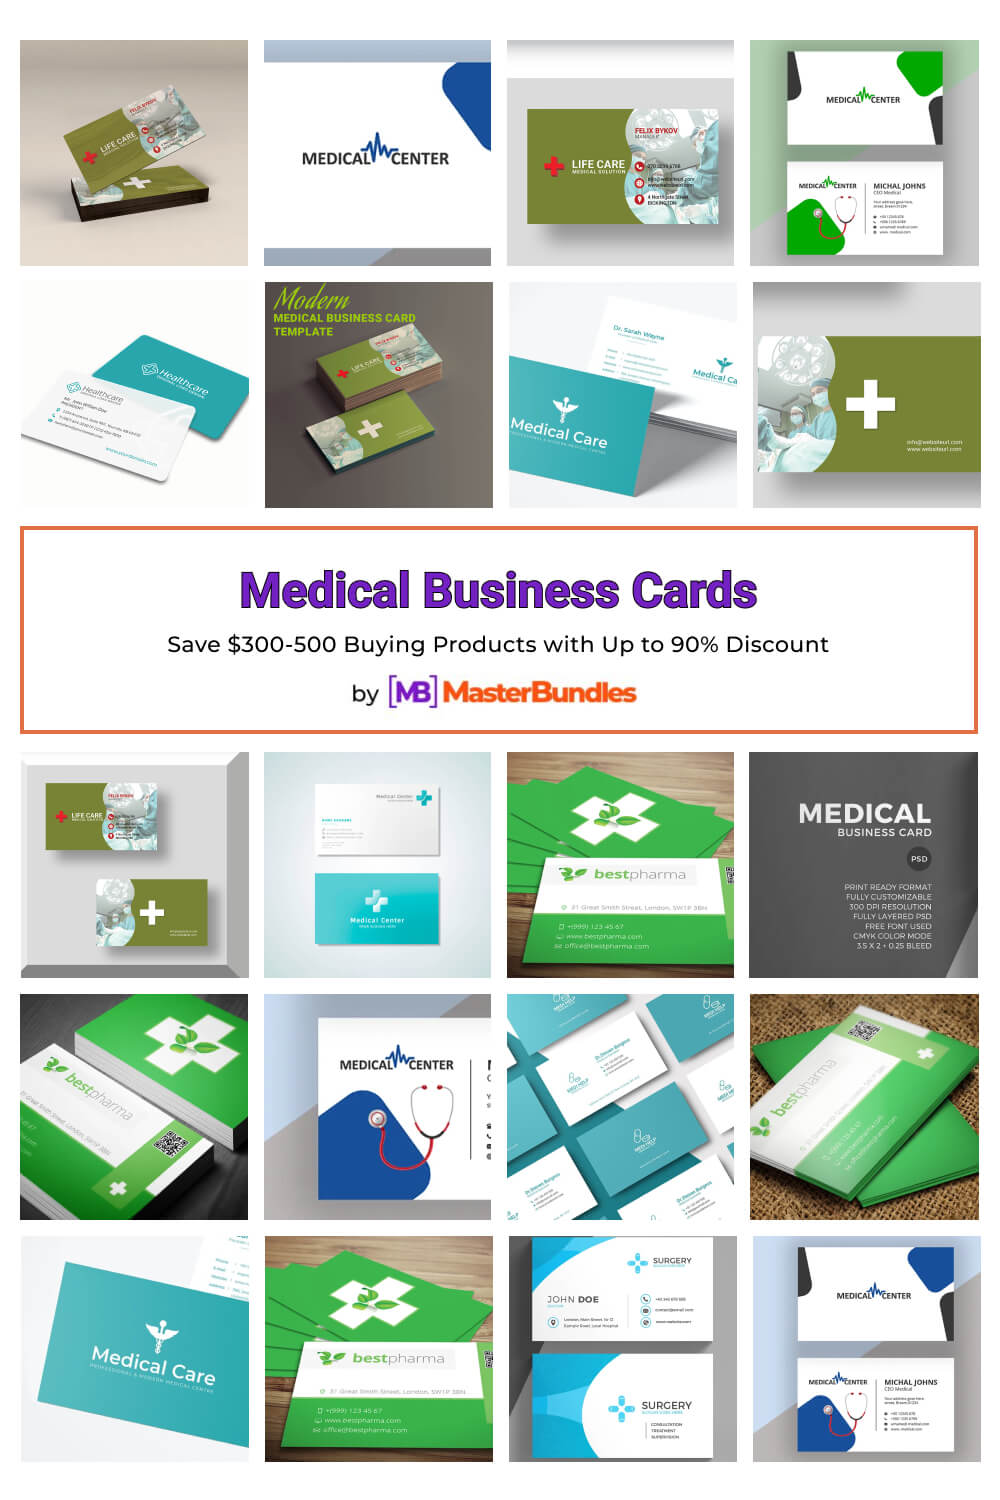 medical business cards pinterest image.